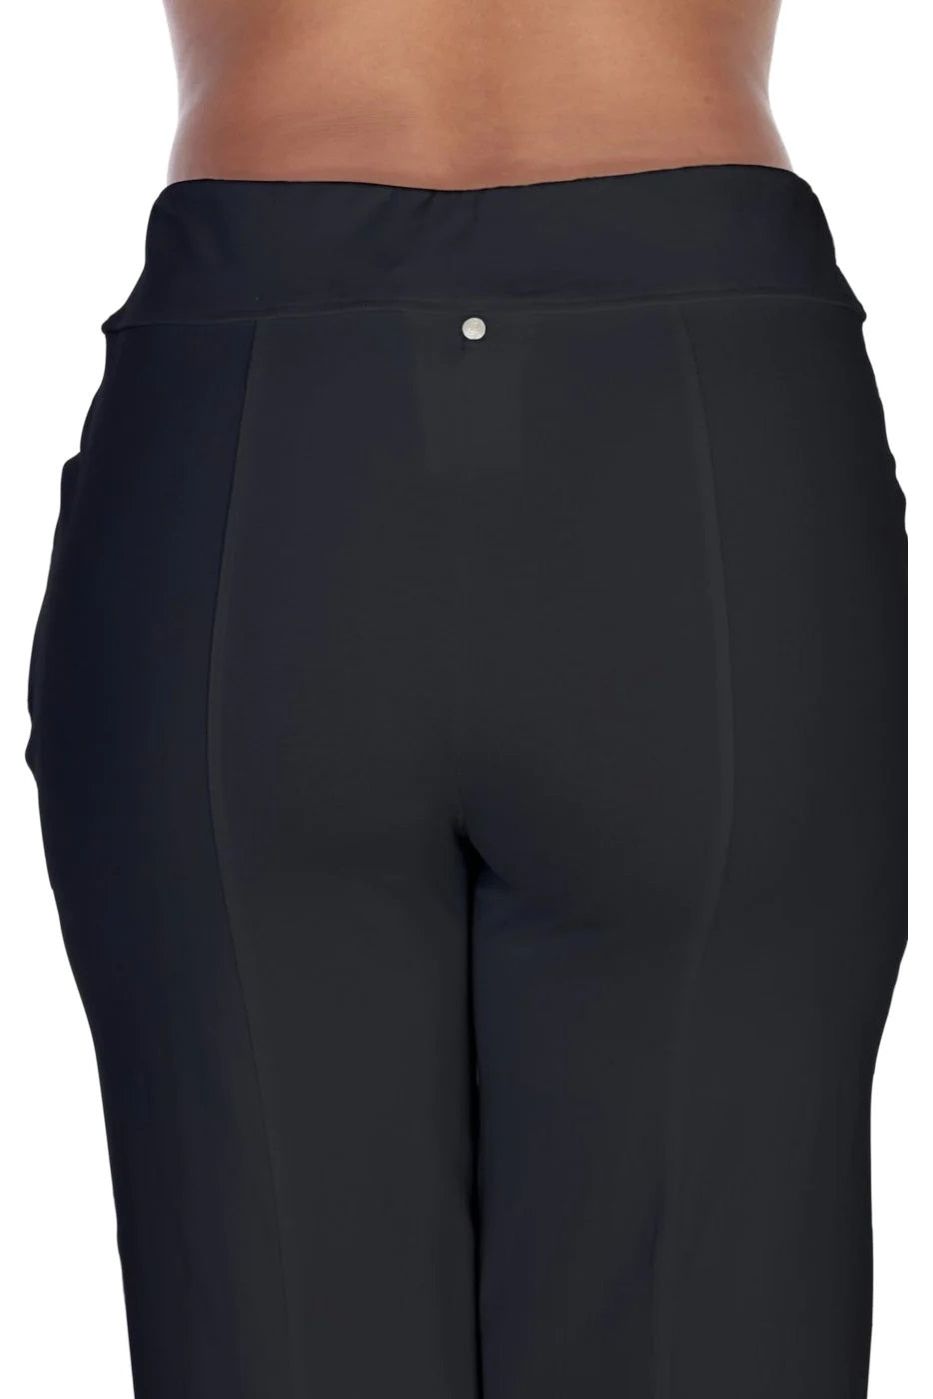 Black Capri Pants